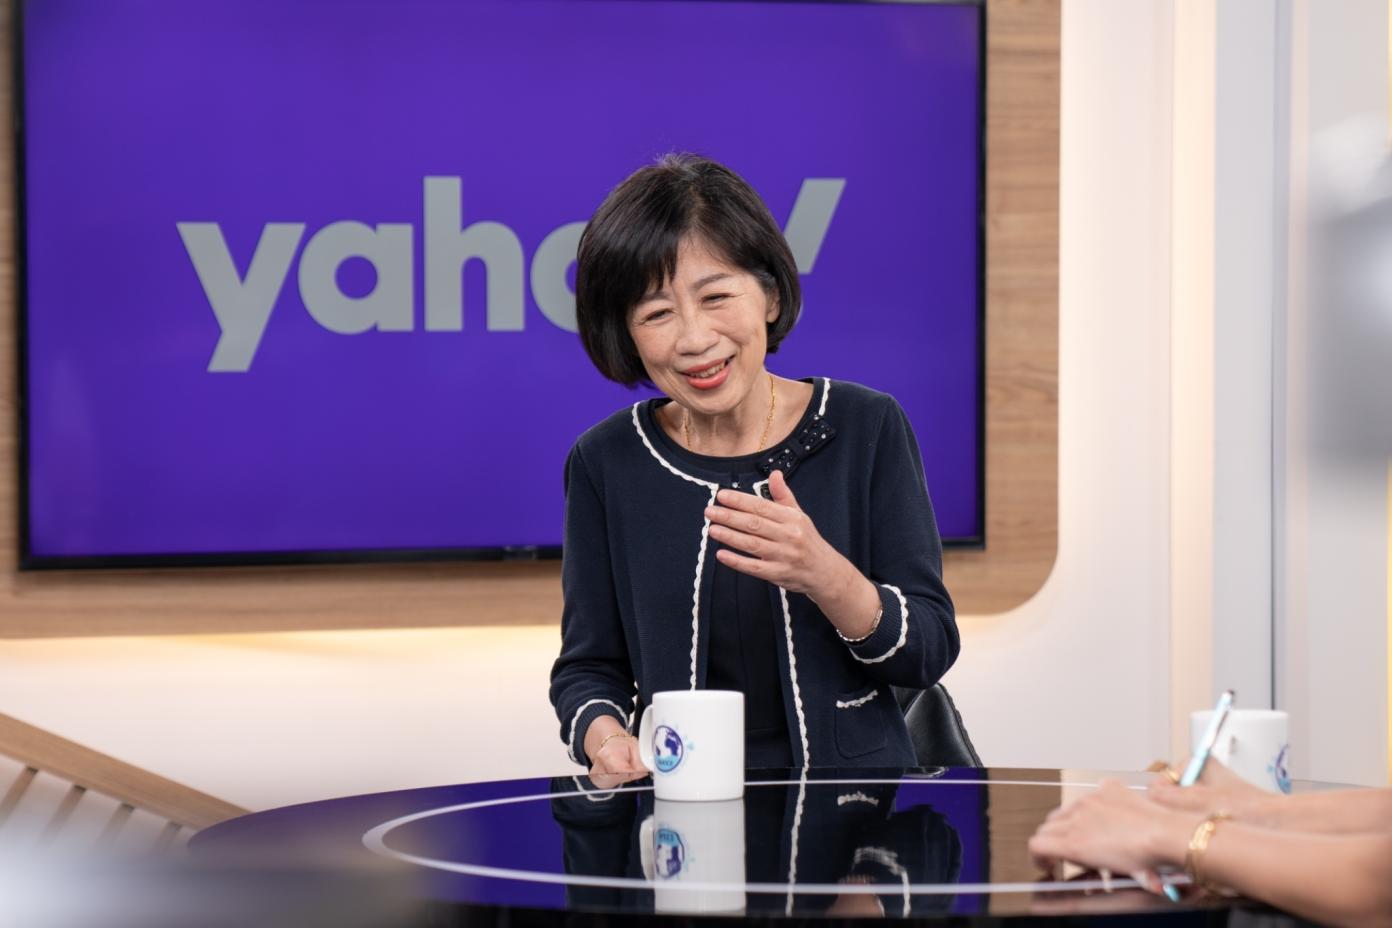 台北市前市長柯文哲的妻子陳佩琪接受專訪時表示曾和先生討論選區域立委，柯文哲受訪時表示陳佩琪不會去選的。Yahoo TV提供